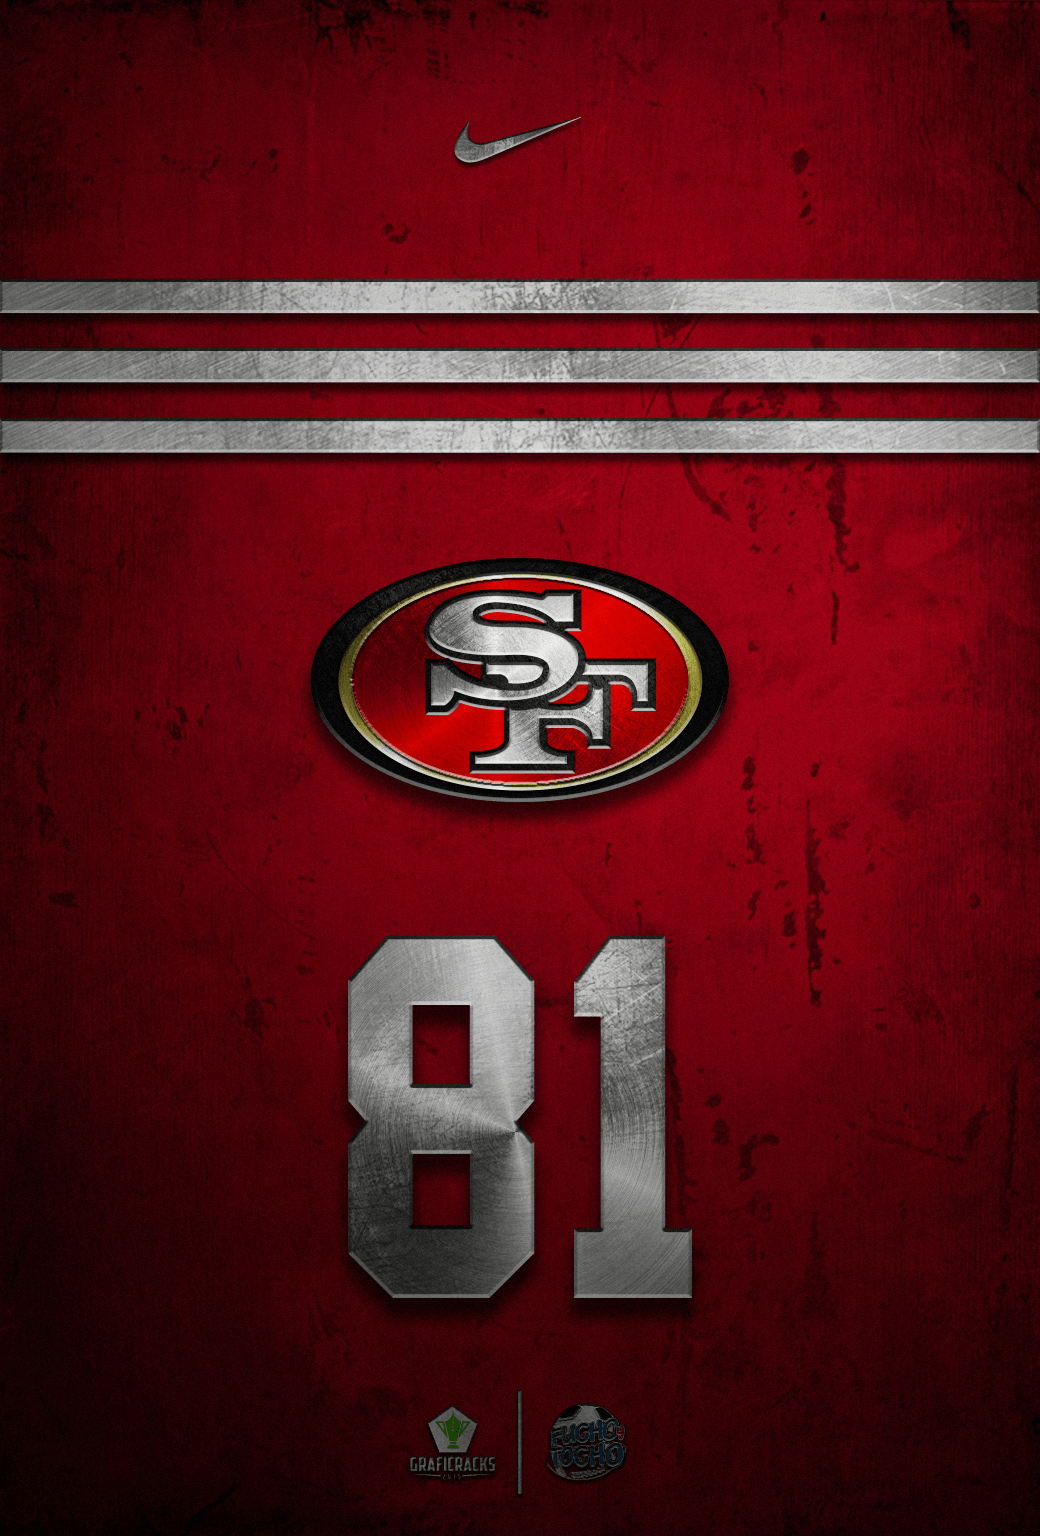 San Francisco 49ers HD wallpaper